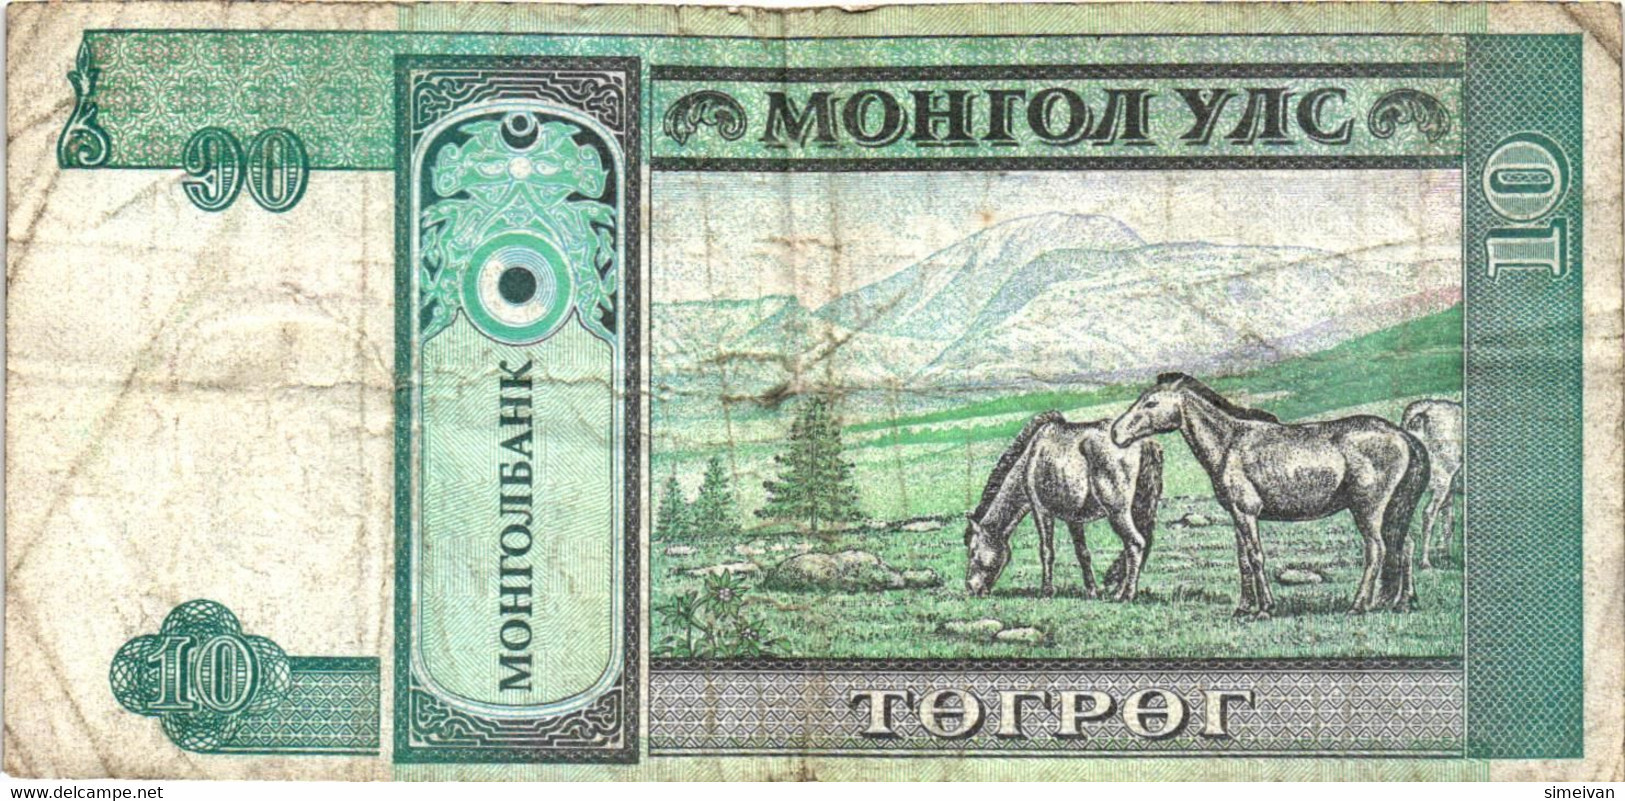 Mongolia 10 Tugrik ND (1993) P-54  Mongolei Mongolie #4190 - Mongolia